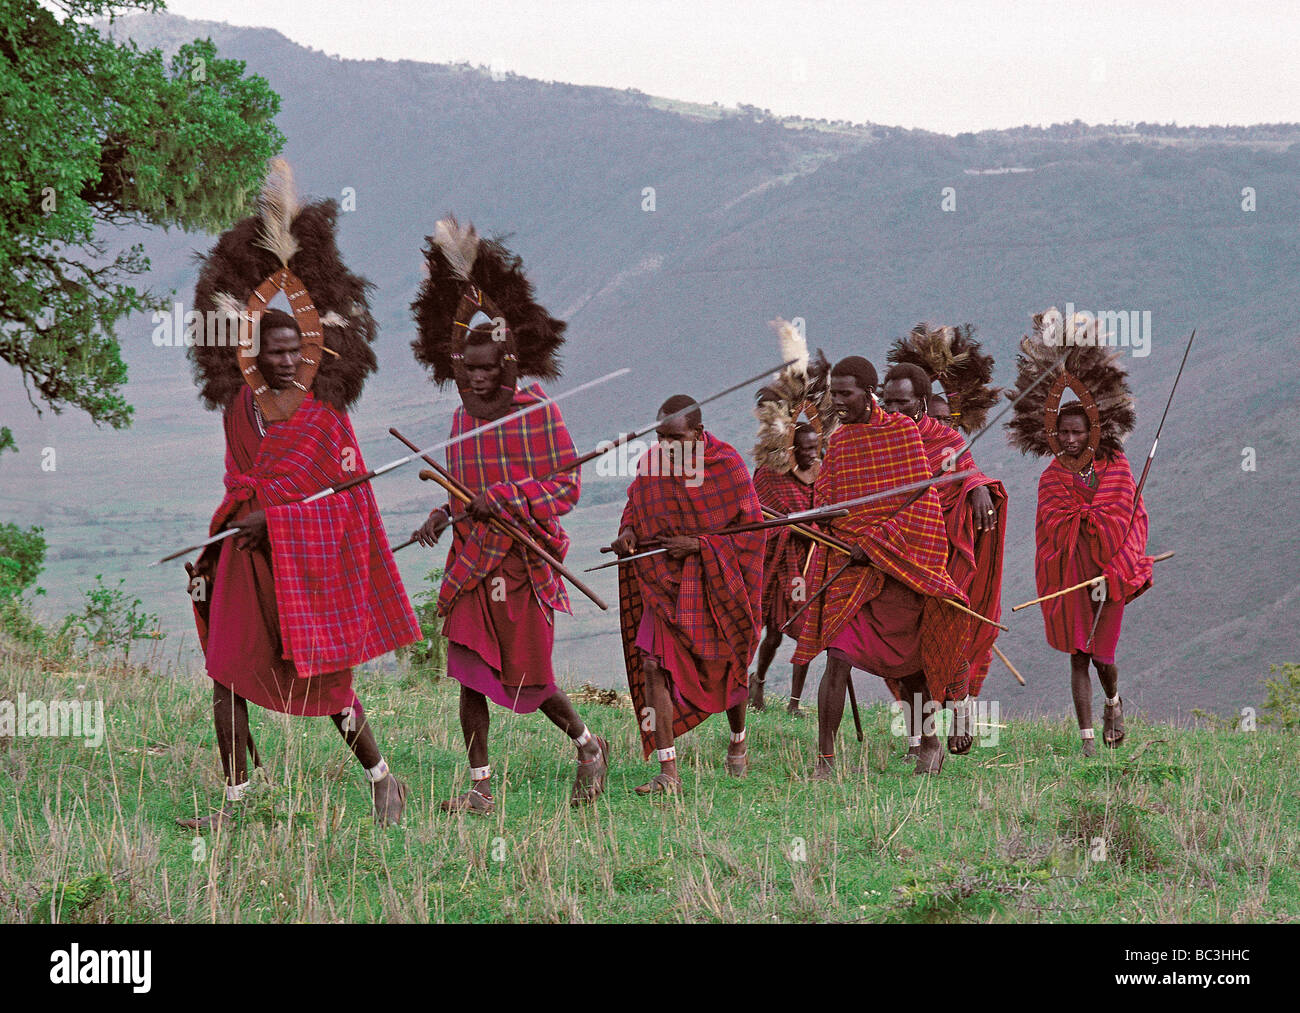 Eine Linie der Massai-Krieger oder Morani in traditioneller Tracht auf dem Rand des Ngorongoro Krater Tansania Ostafrika Stockfoto